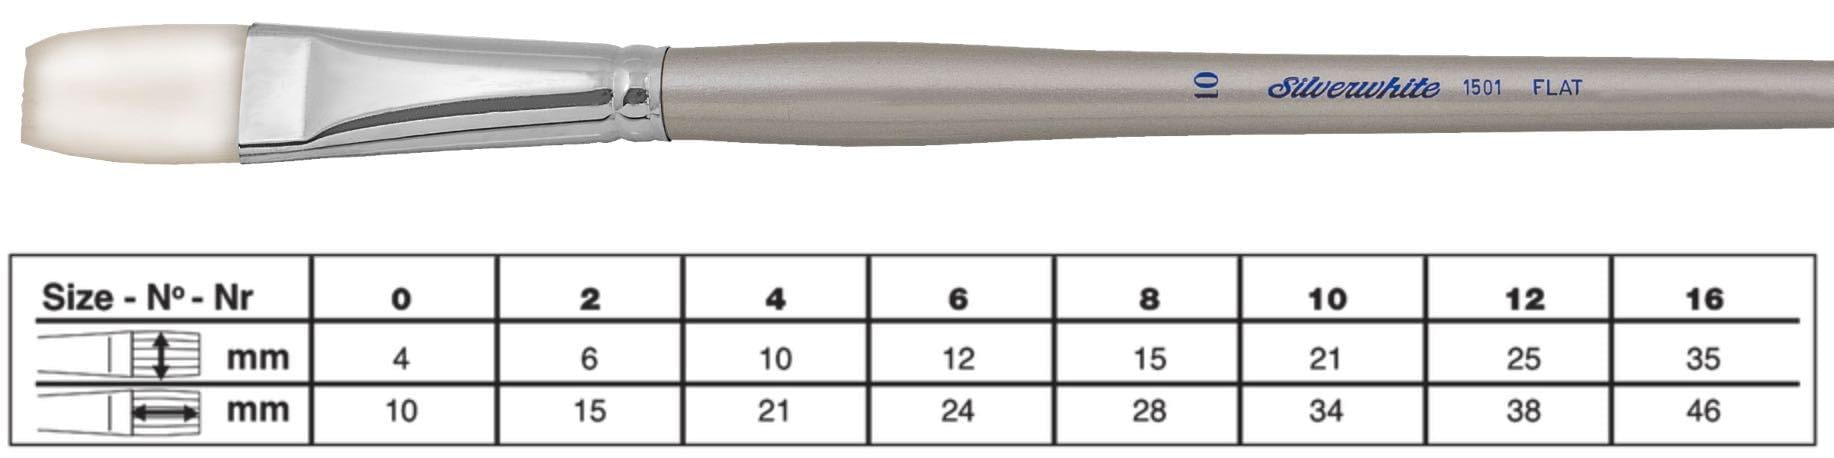 SILVER BRUSH SILVER BRUSH 10 (21mm x 34mm) Silver Brush 1501 Silverwhite Long Handle